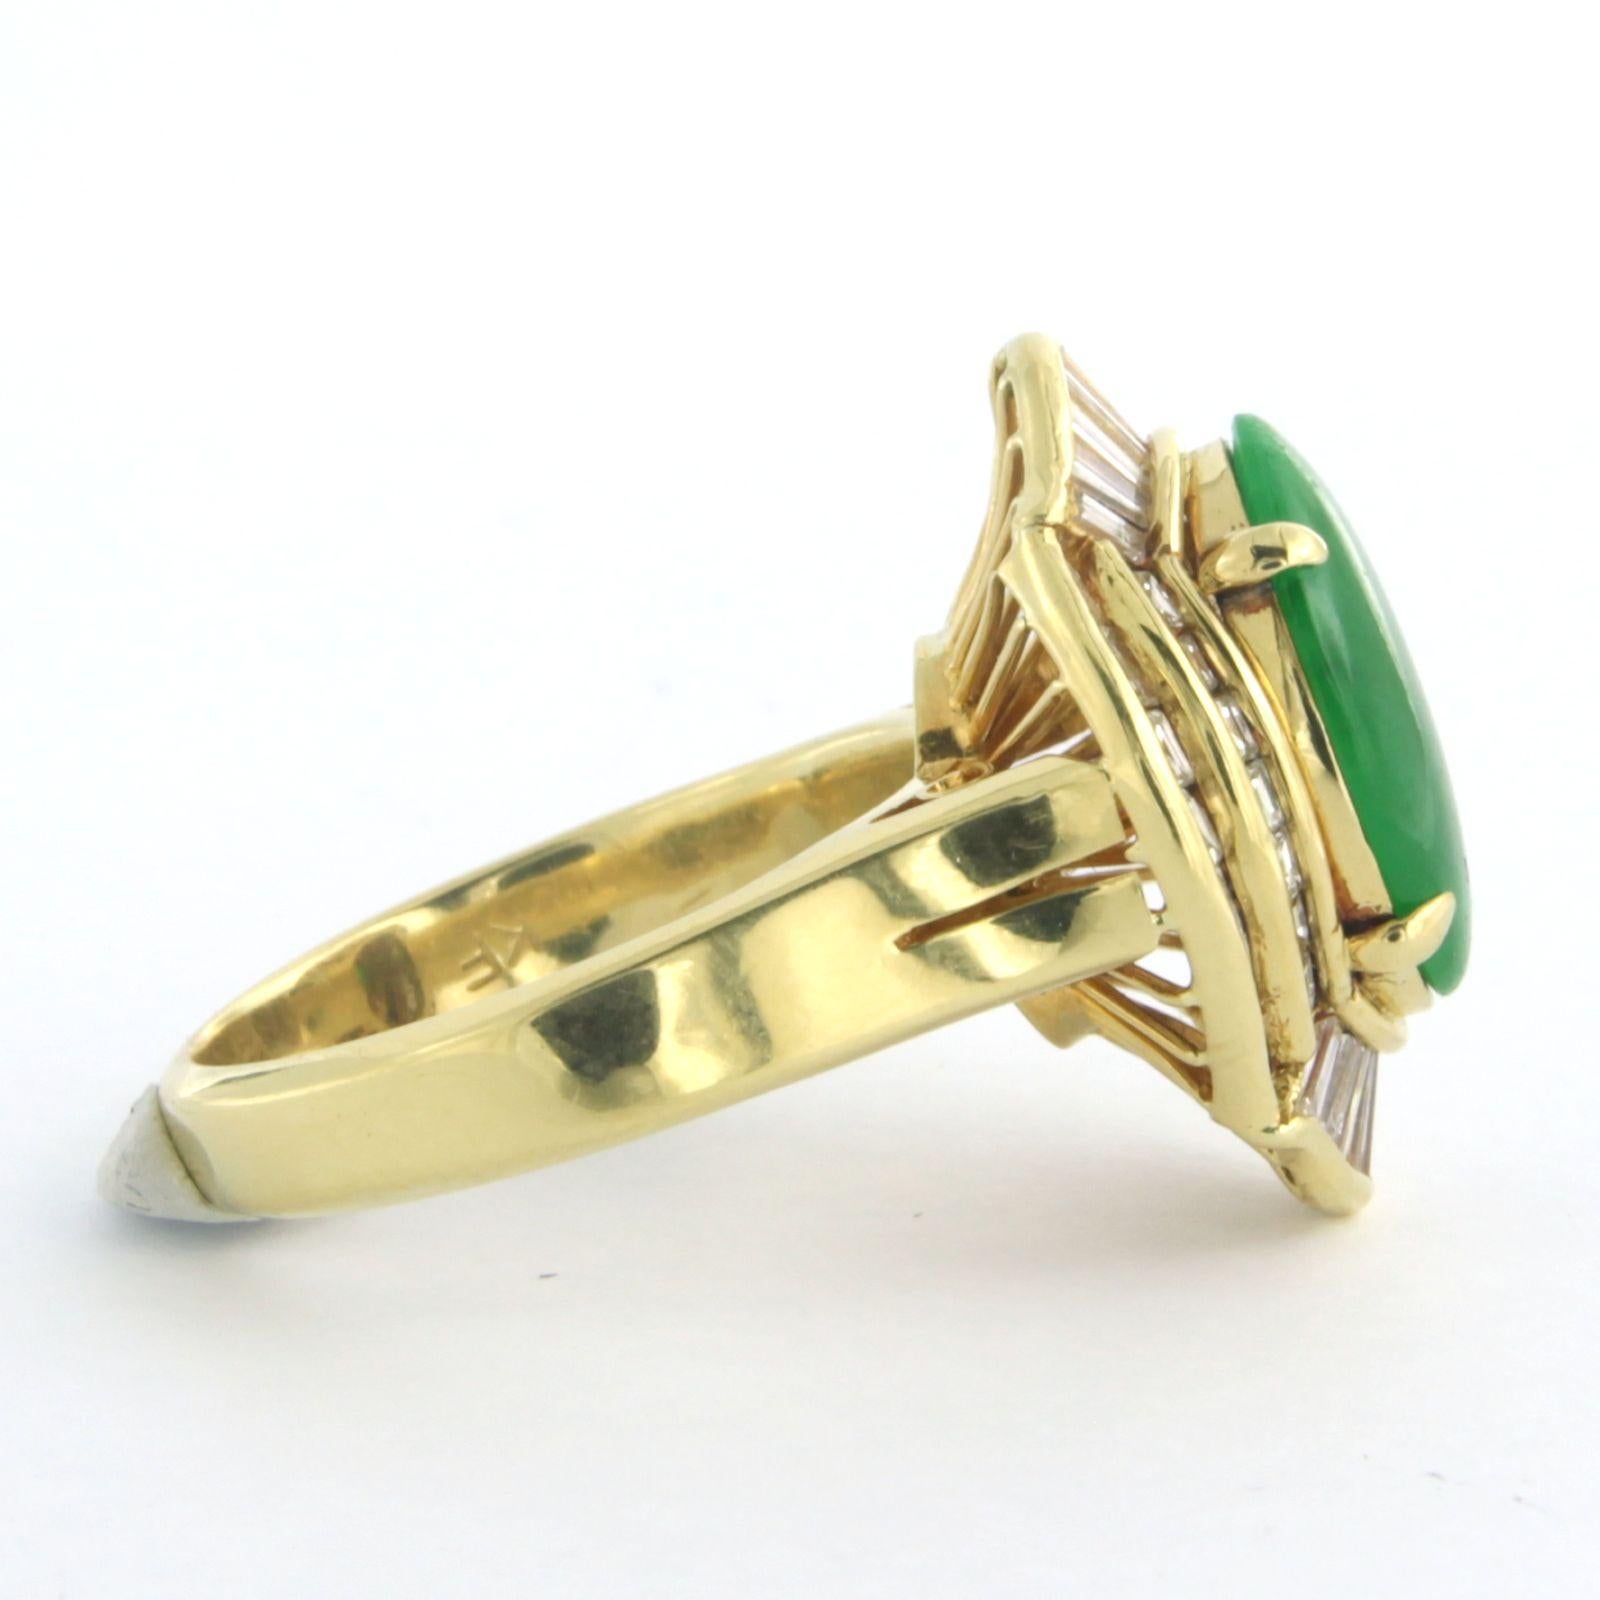 Ring aus 18 kt Gelbgold mit Jade und Diamant 1.00 ct - Ringgröße U.S. 7 - EU. 17.25(54)

ausführliche Beschreibung

 die Oberseite des Rings ist 2,1 cm breit und 1,0 cm hoch

Gewicht 8,8 Gramm

Ringgröße U.S. 7 - EU. 17.25(54), Ring kann zum